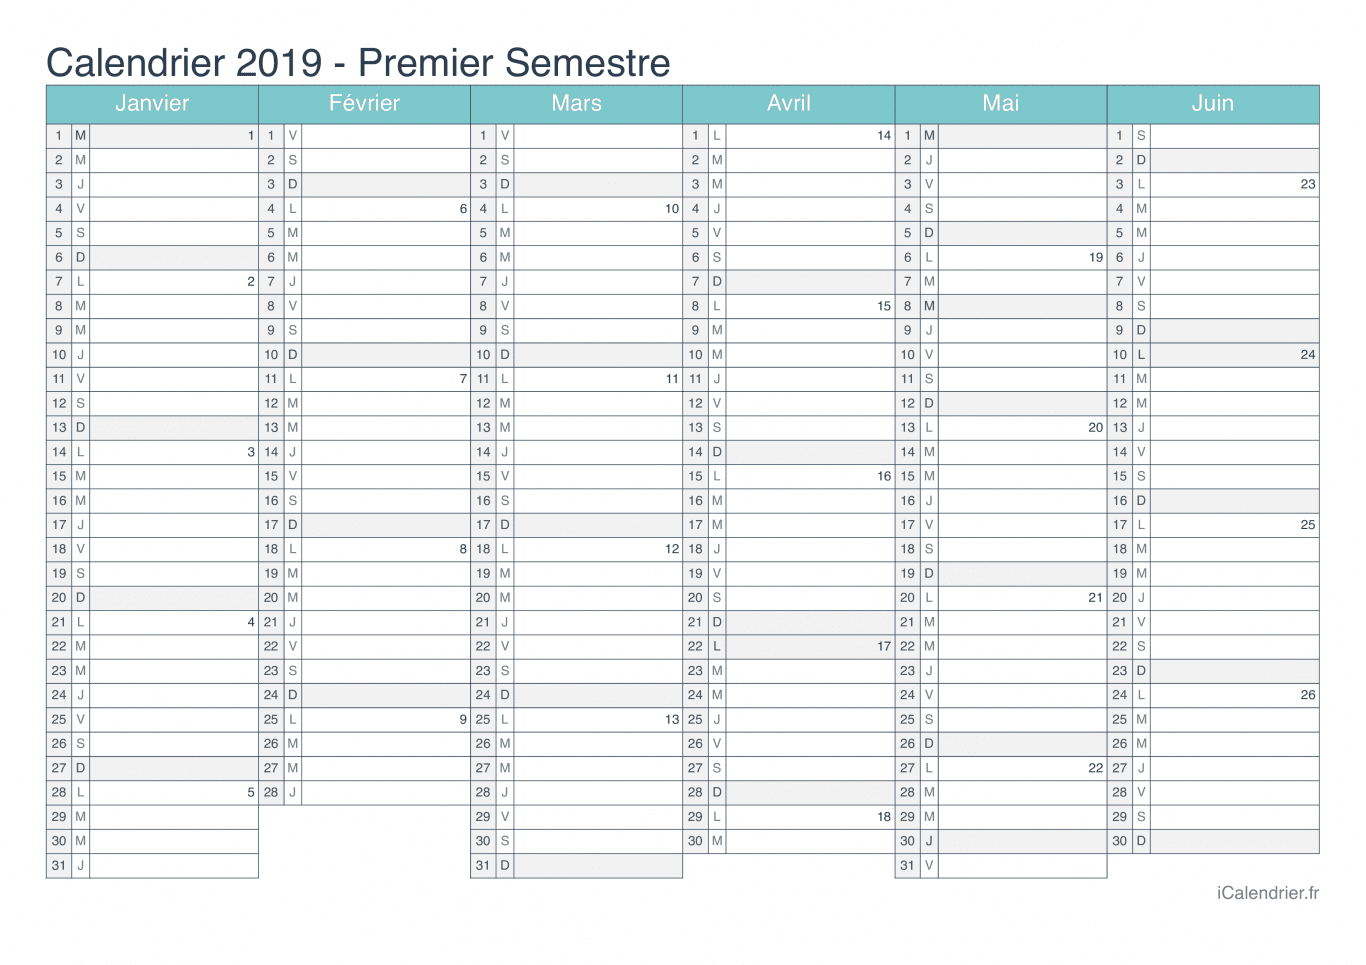 Calendrier par semestre avec numéros des semaines 2019 - Turquoise